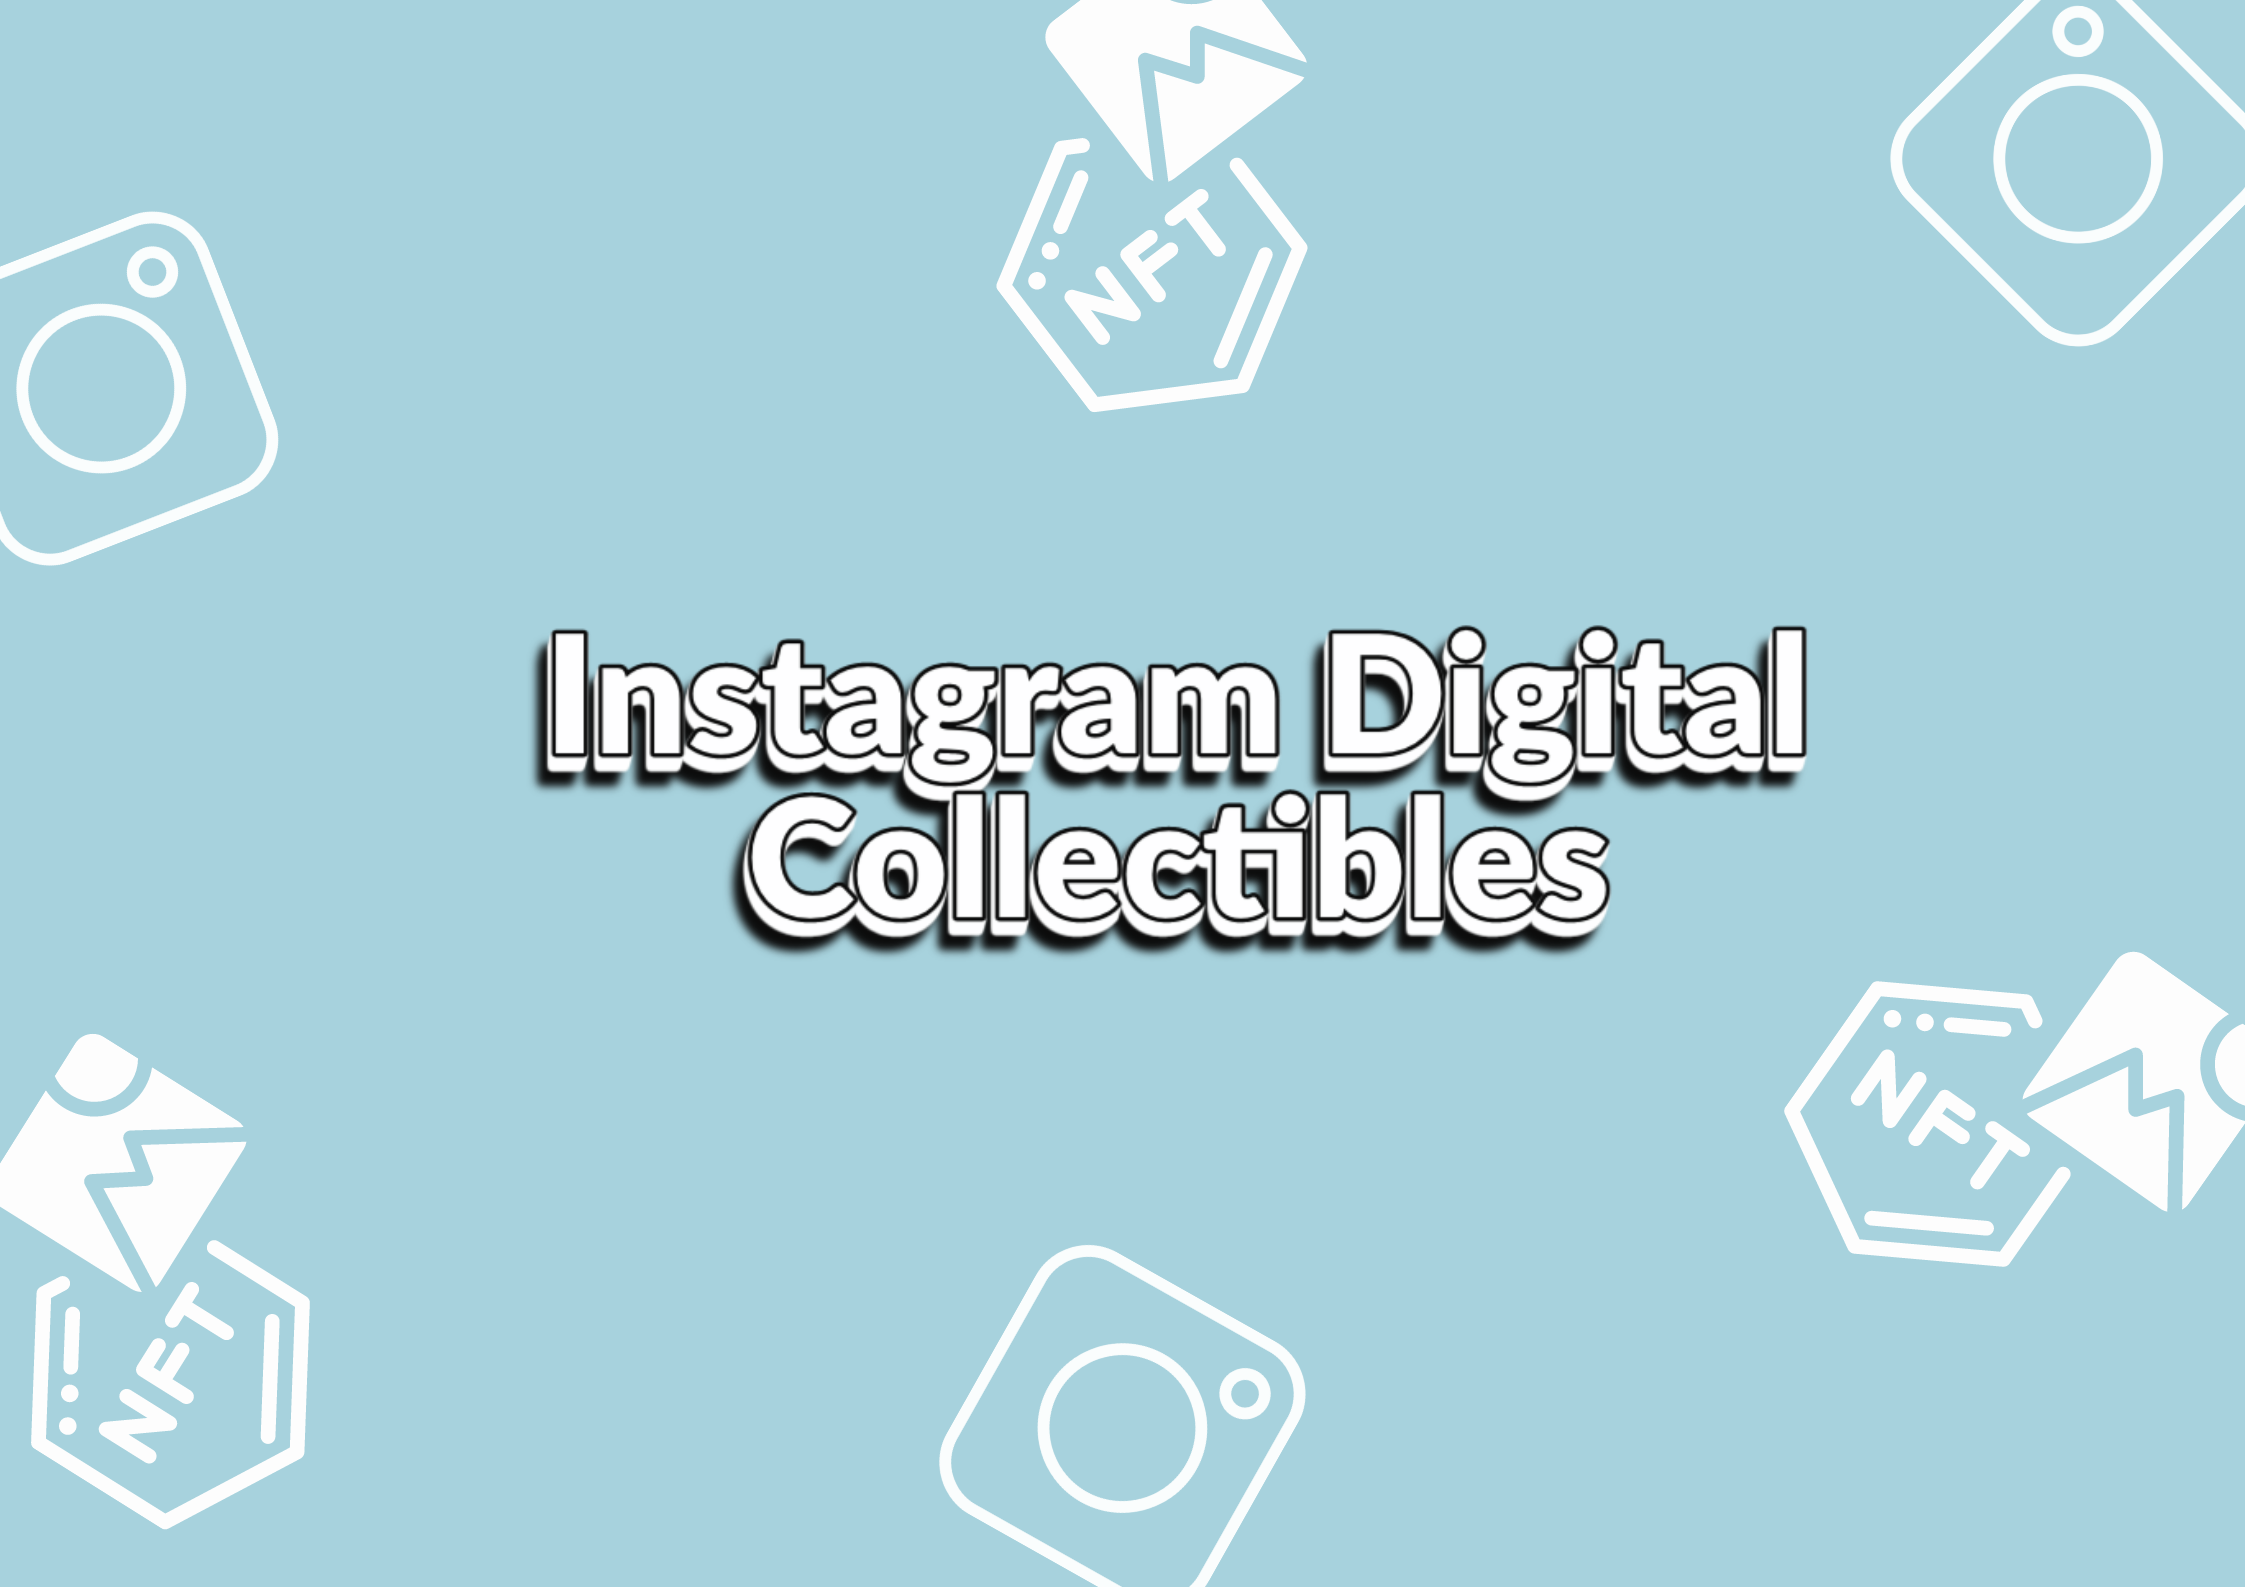 Instagram Digital Collectible Certificates